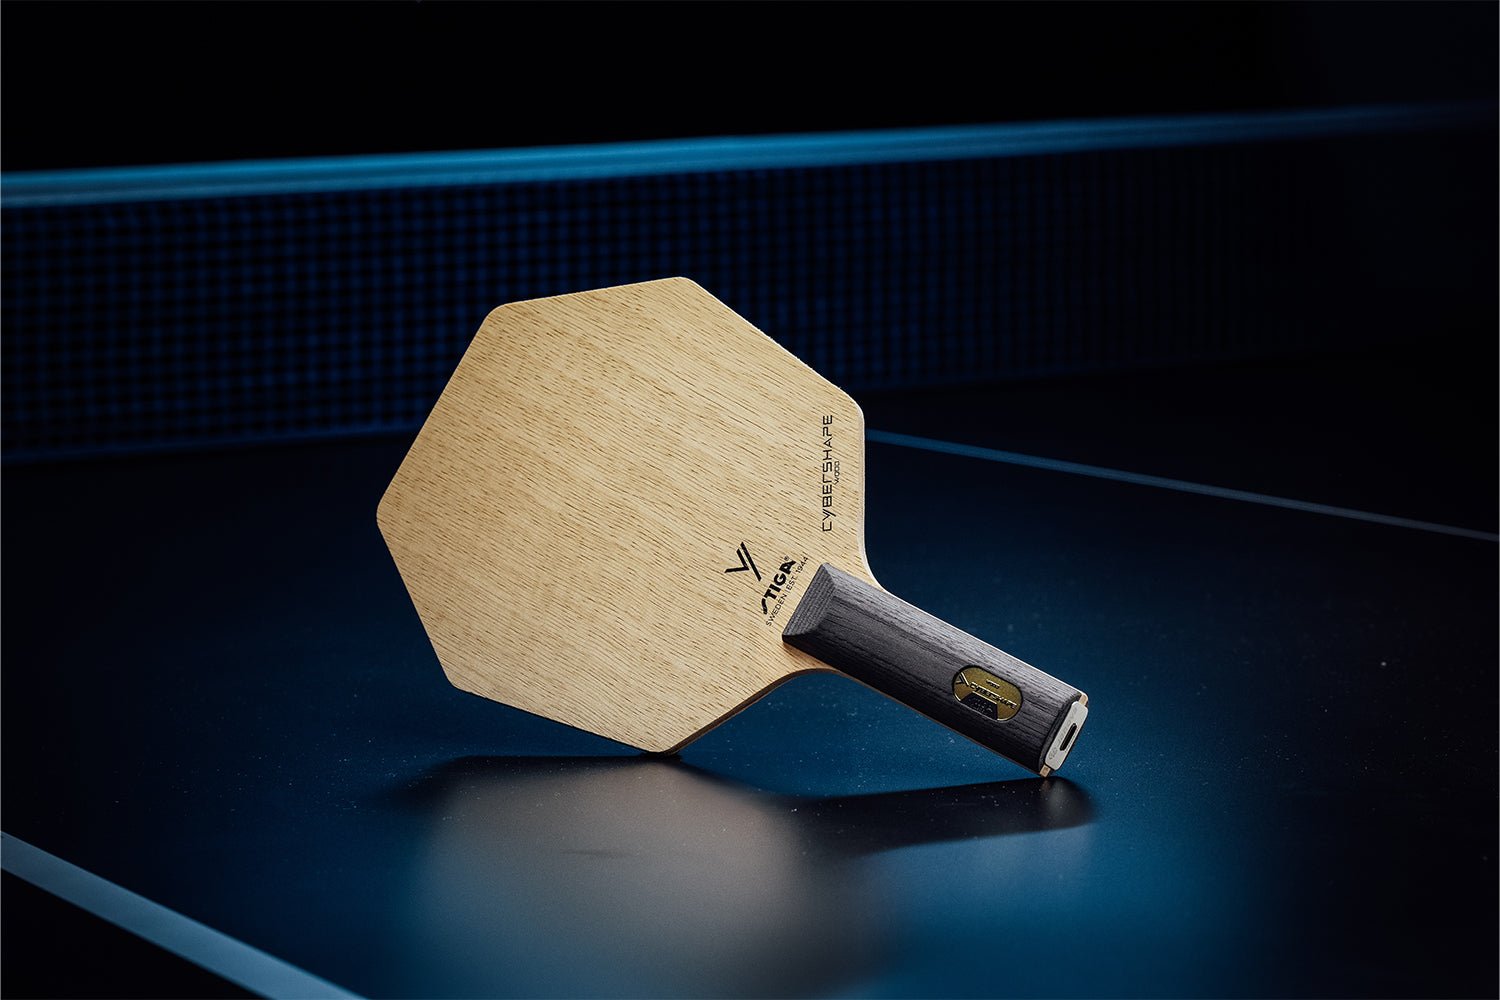 Stehender Stiga Cybershape Wood Tischtennisschläger mit geradem Griff, Janova Sensor, USB-C-Buchse auf Tischtennistisch